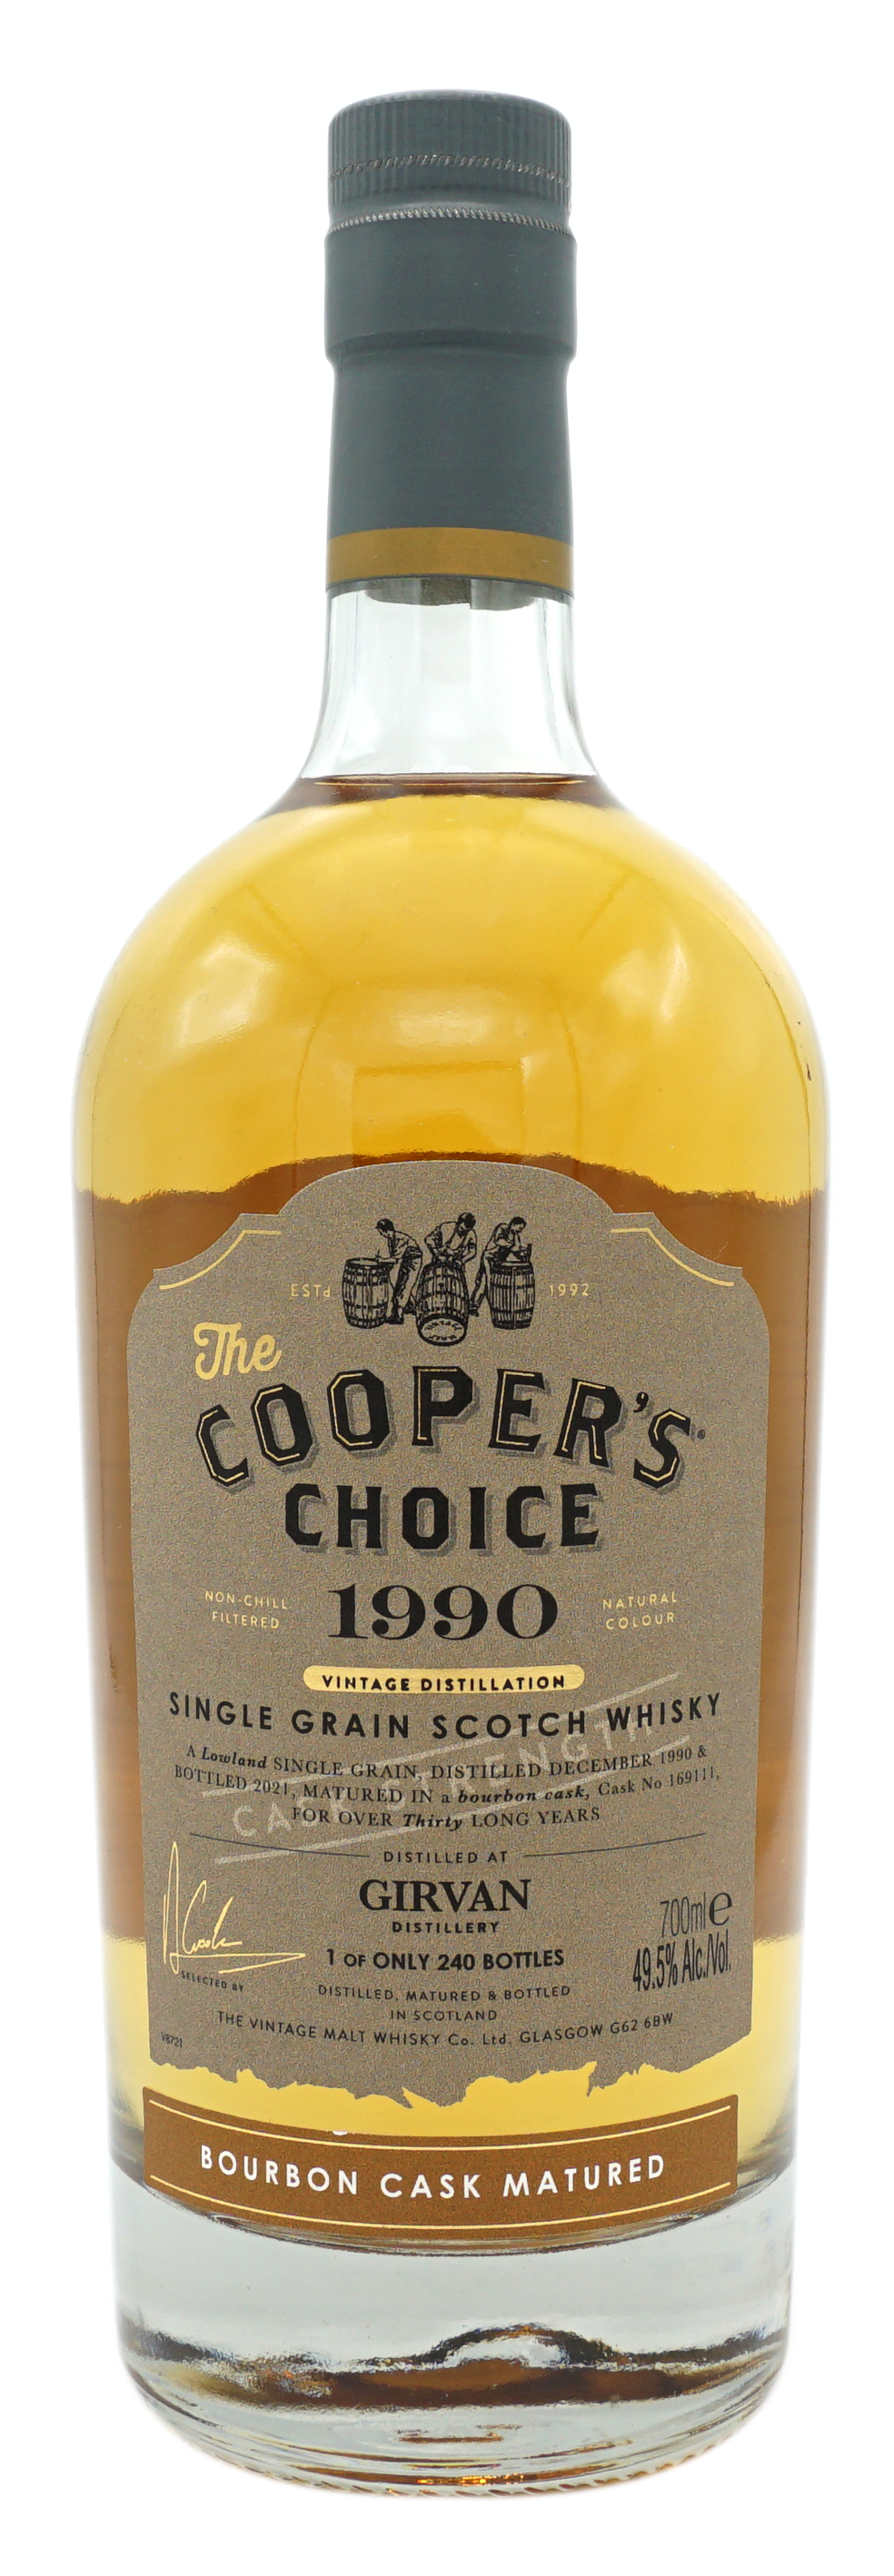 CoopersChoice 1990 Grivan GrainWhisky 49,5% Fles